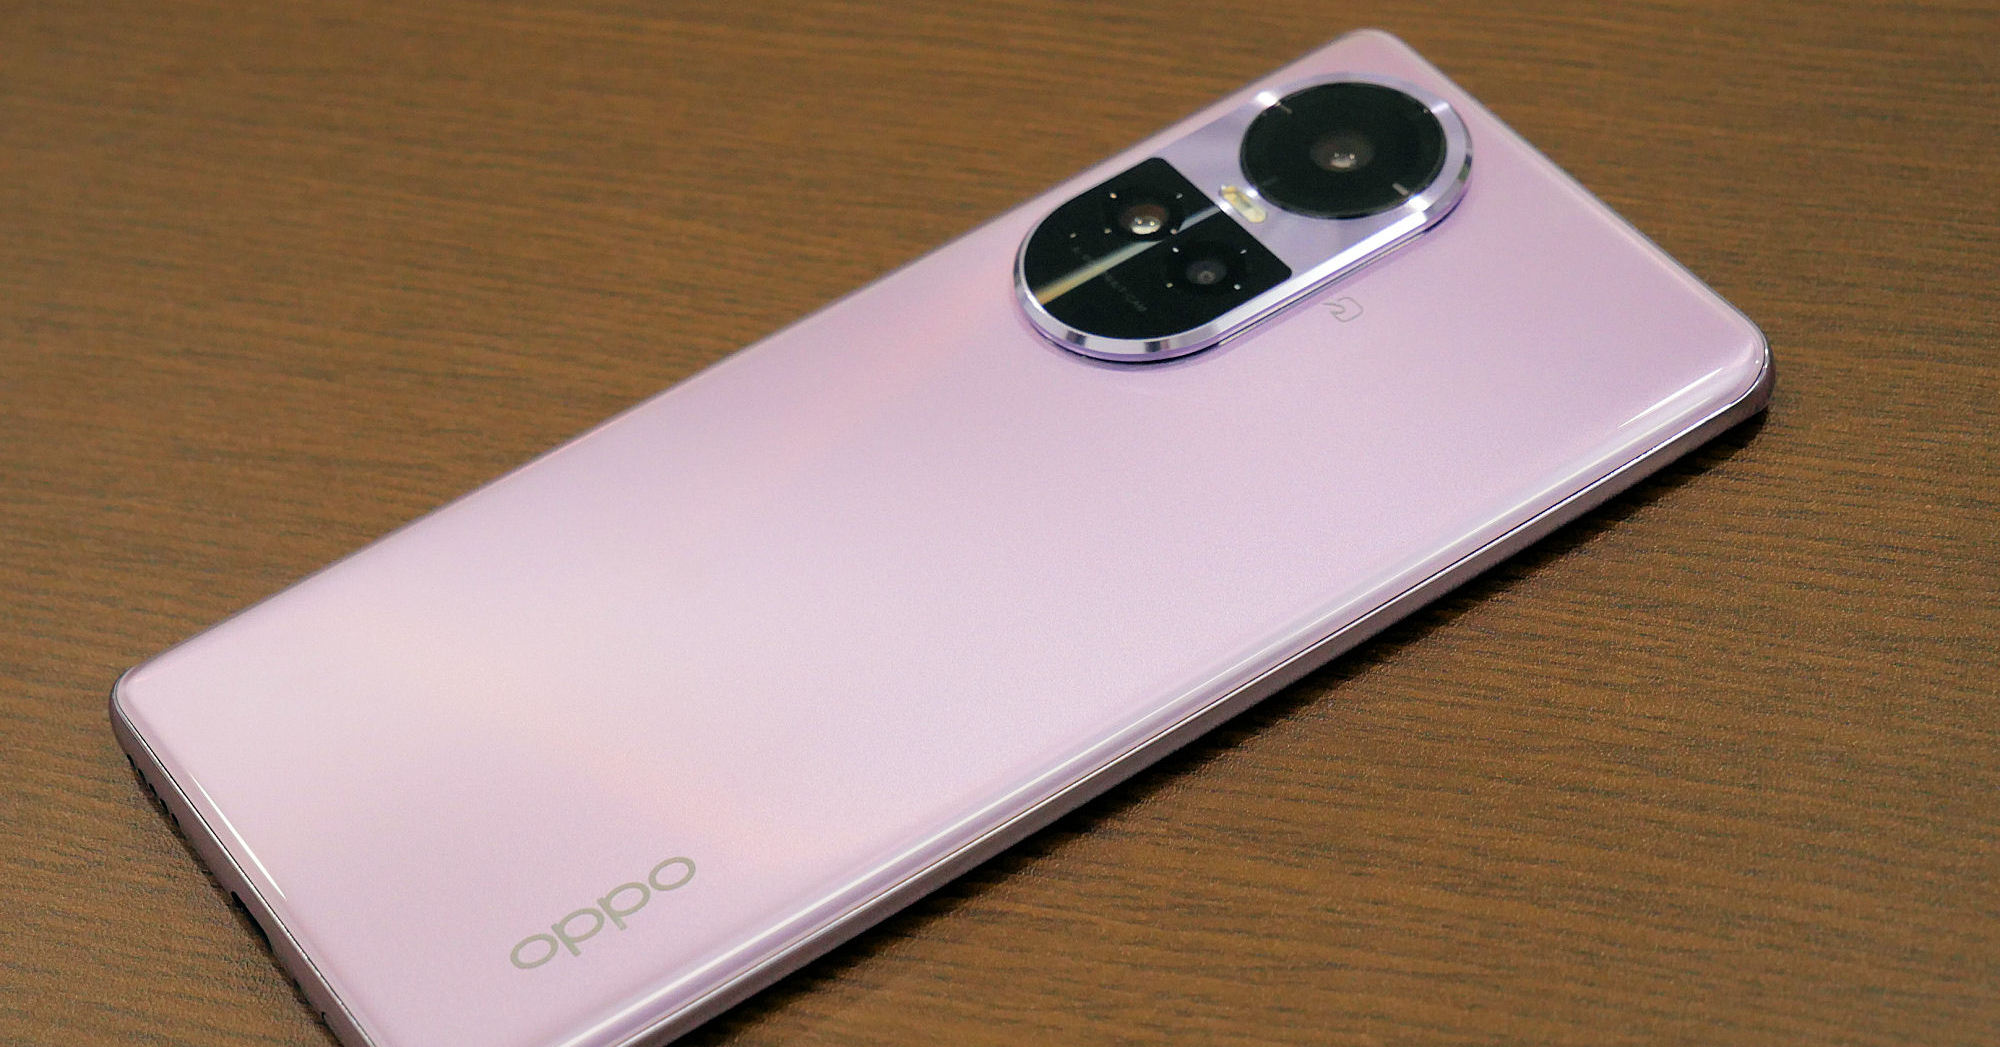 OPPOが日本で再びスマホを拡充するワケ　「Reno 10 Pro 5G」の販売は「信じられないような伸び」